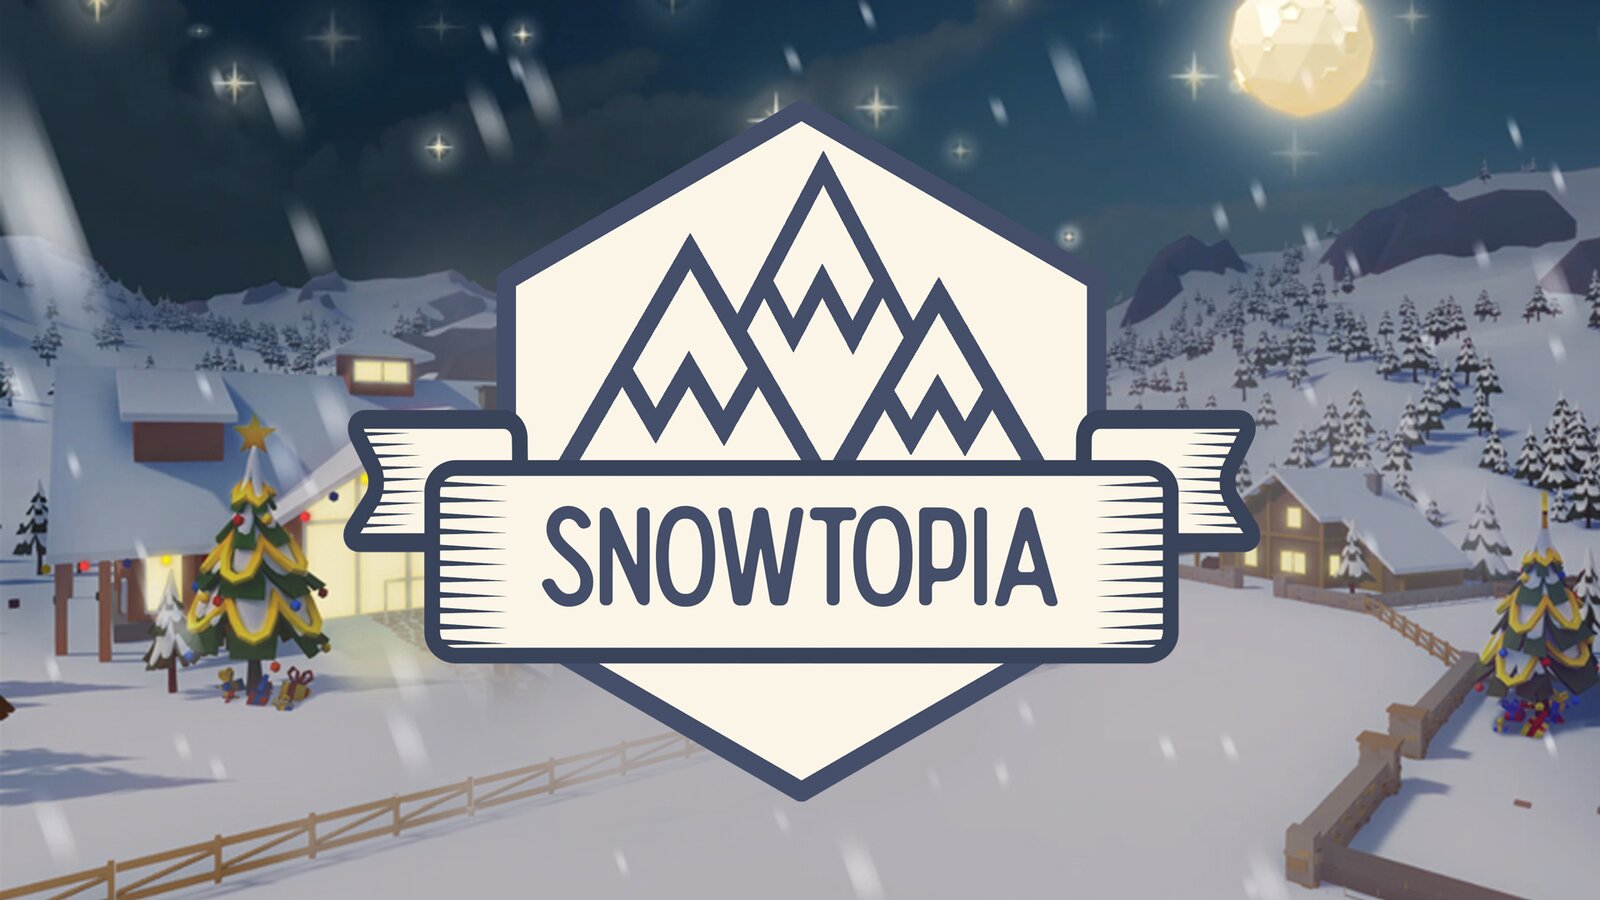 Snowtopia